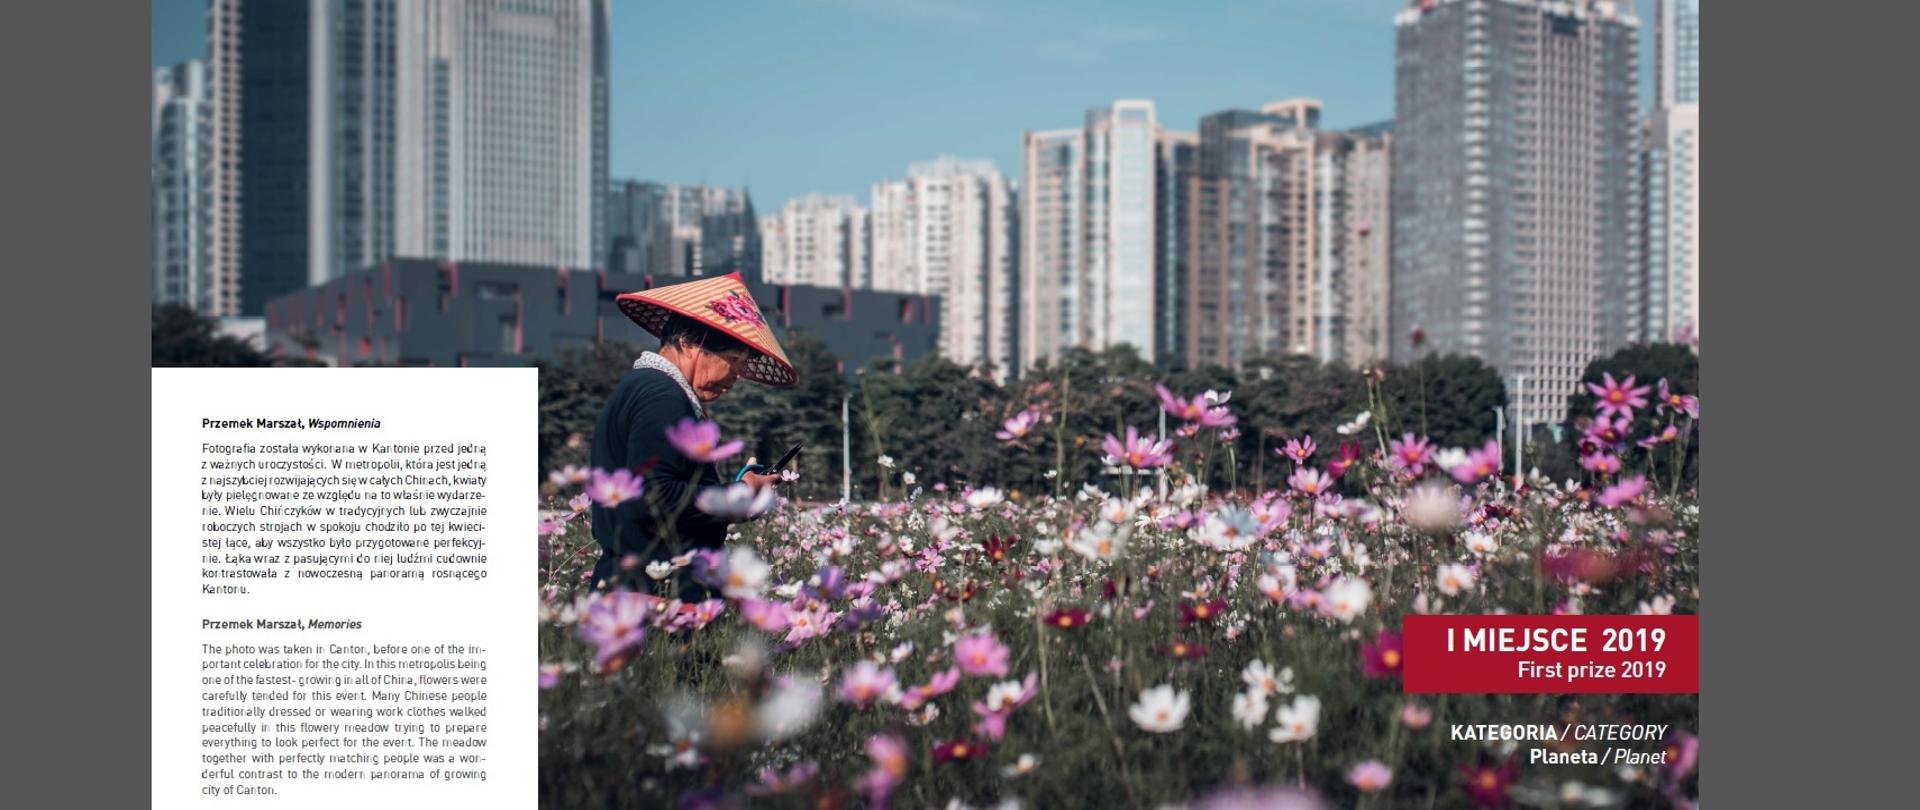 Azjatka pośród kwiatów, w tle wysokie budynki